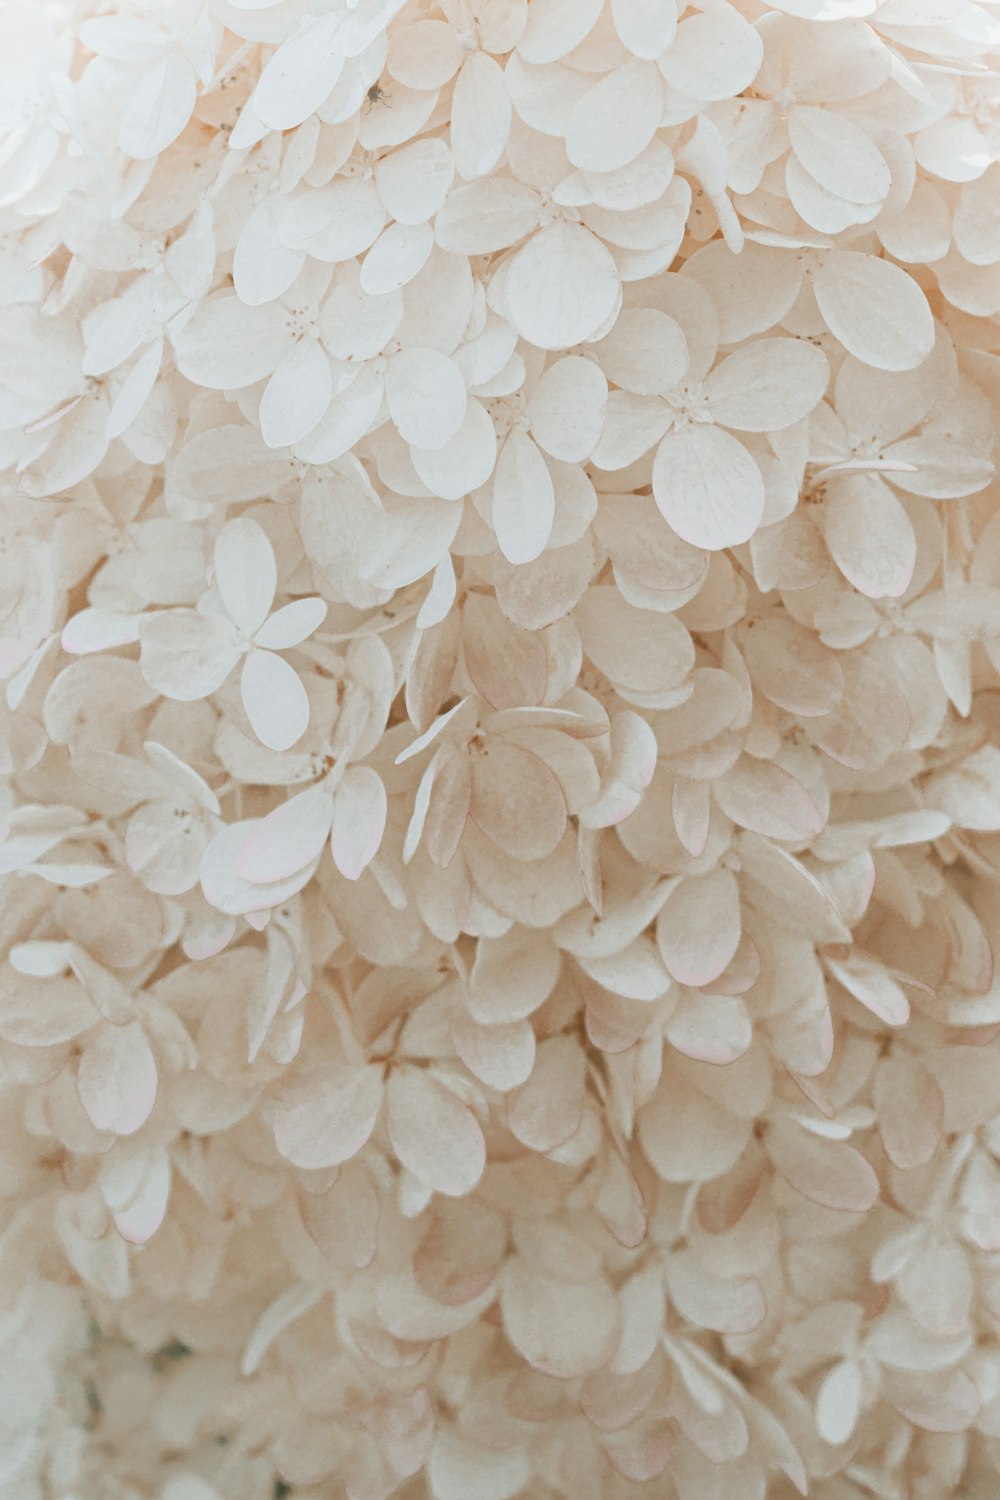 têxtil floral branco e marrom